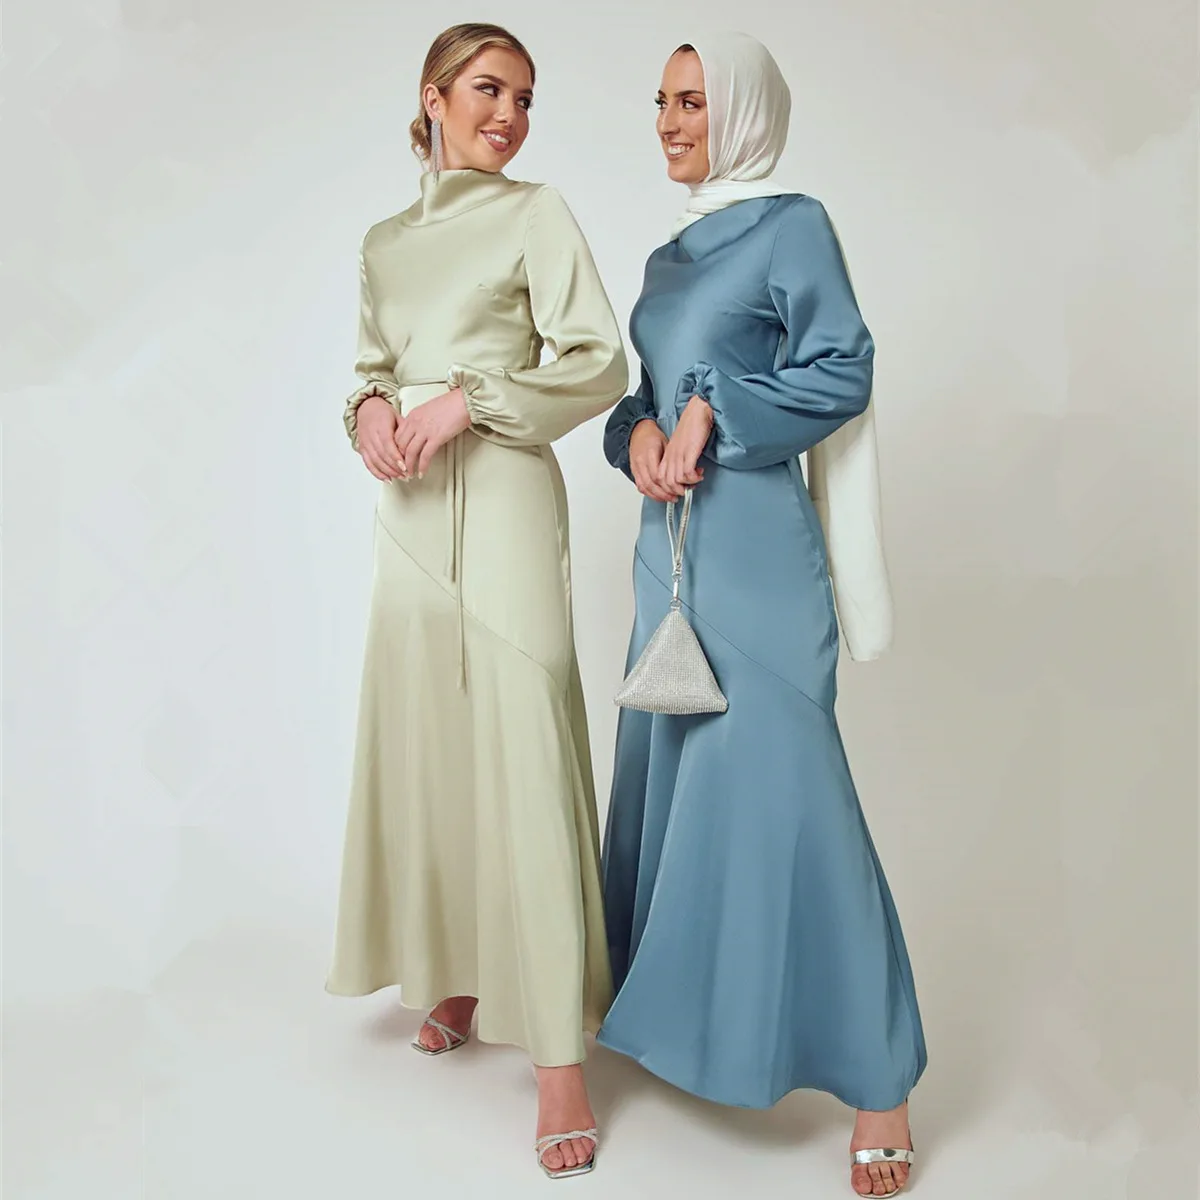 Рамадан Средний Восток Abayas для женщин, турецкие платья, женский халат, мусульманские модные платья подружки невесты, европейская одежда